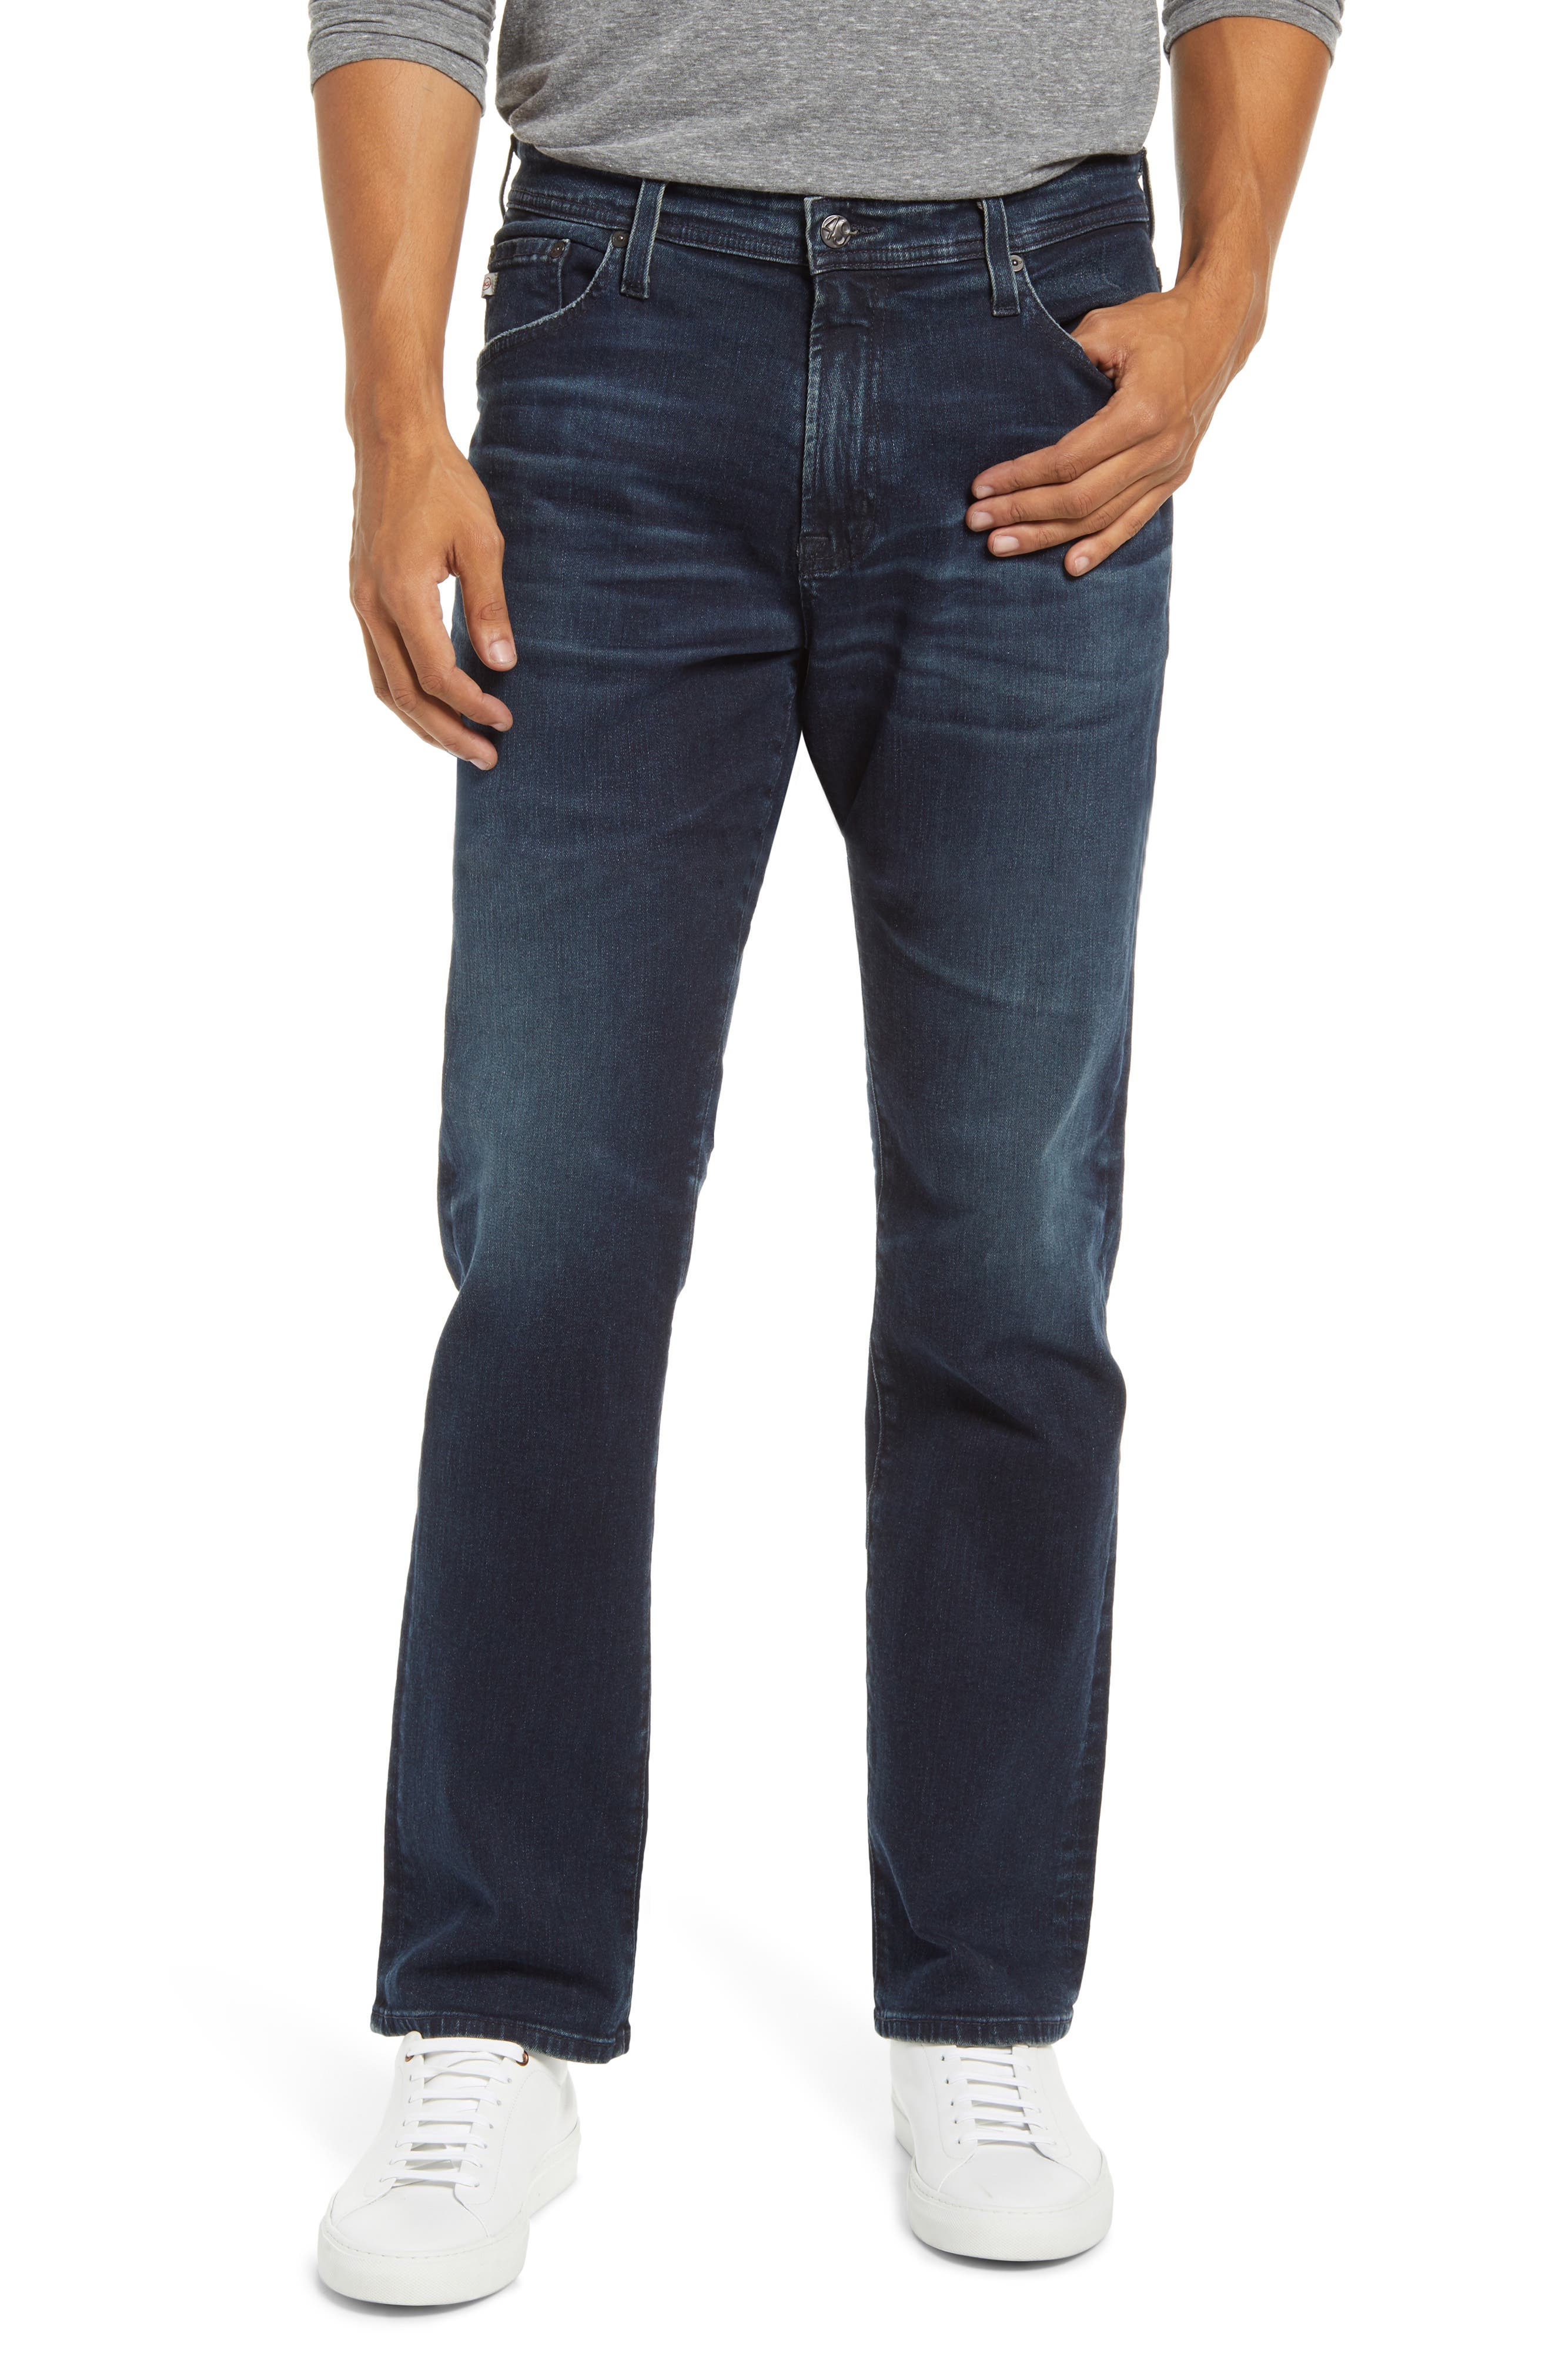 size 46 designer jeans